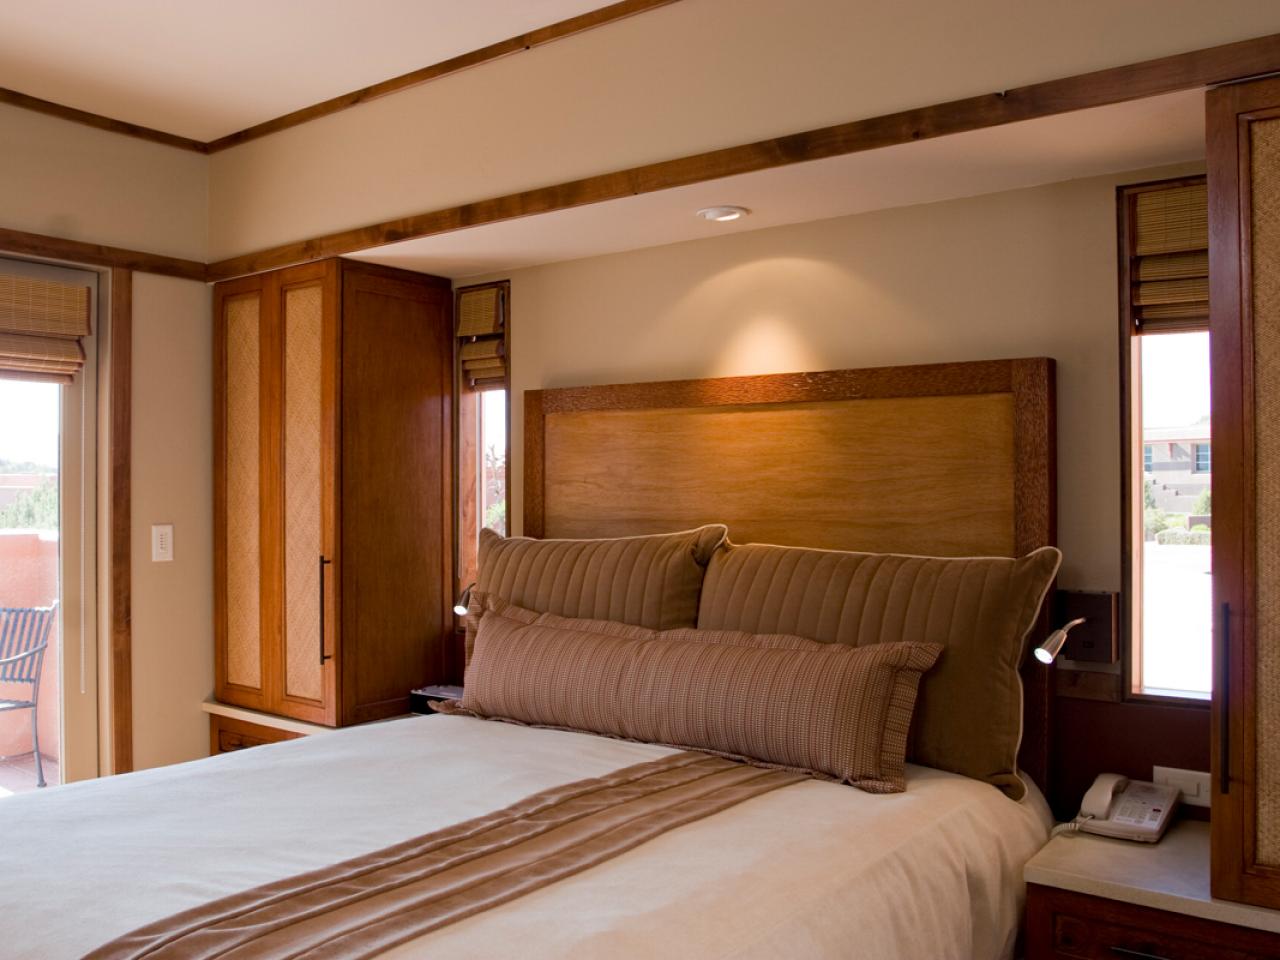 déco chambre tête de lit bois originle lit beige marron couleurs neutre design simple stylé armoire bois